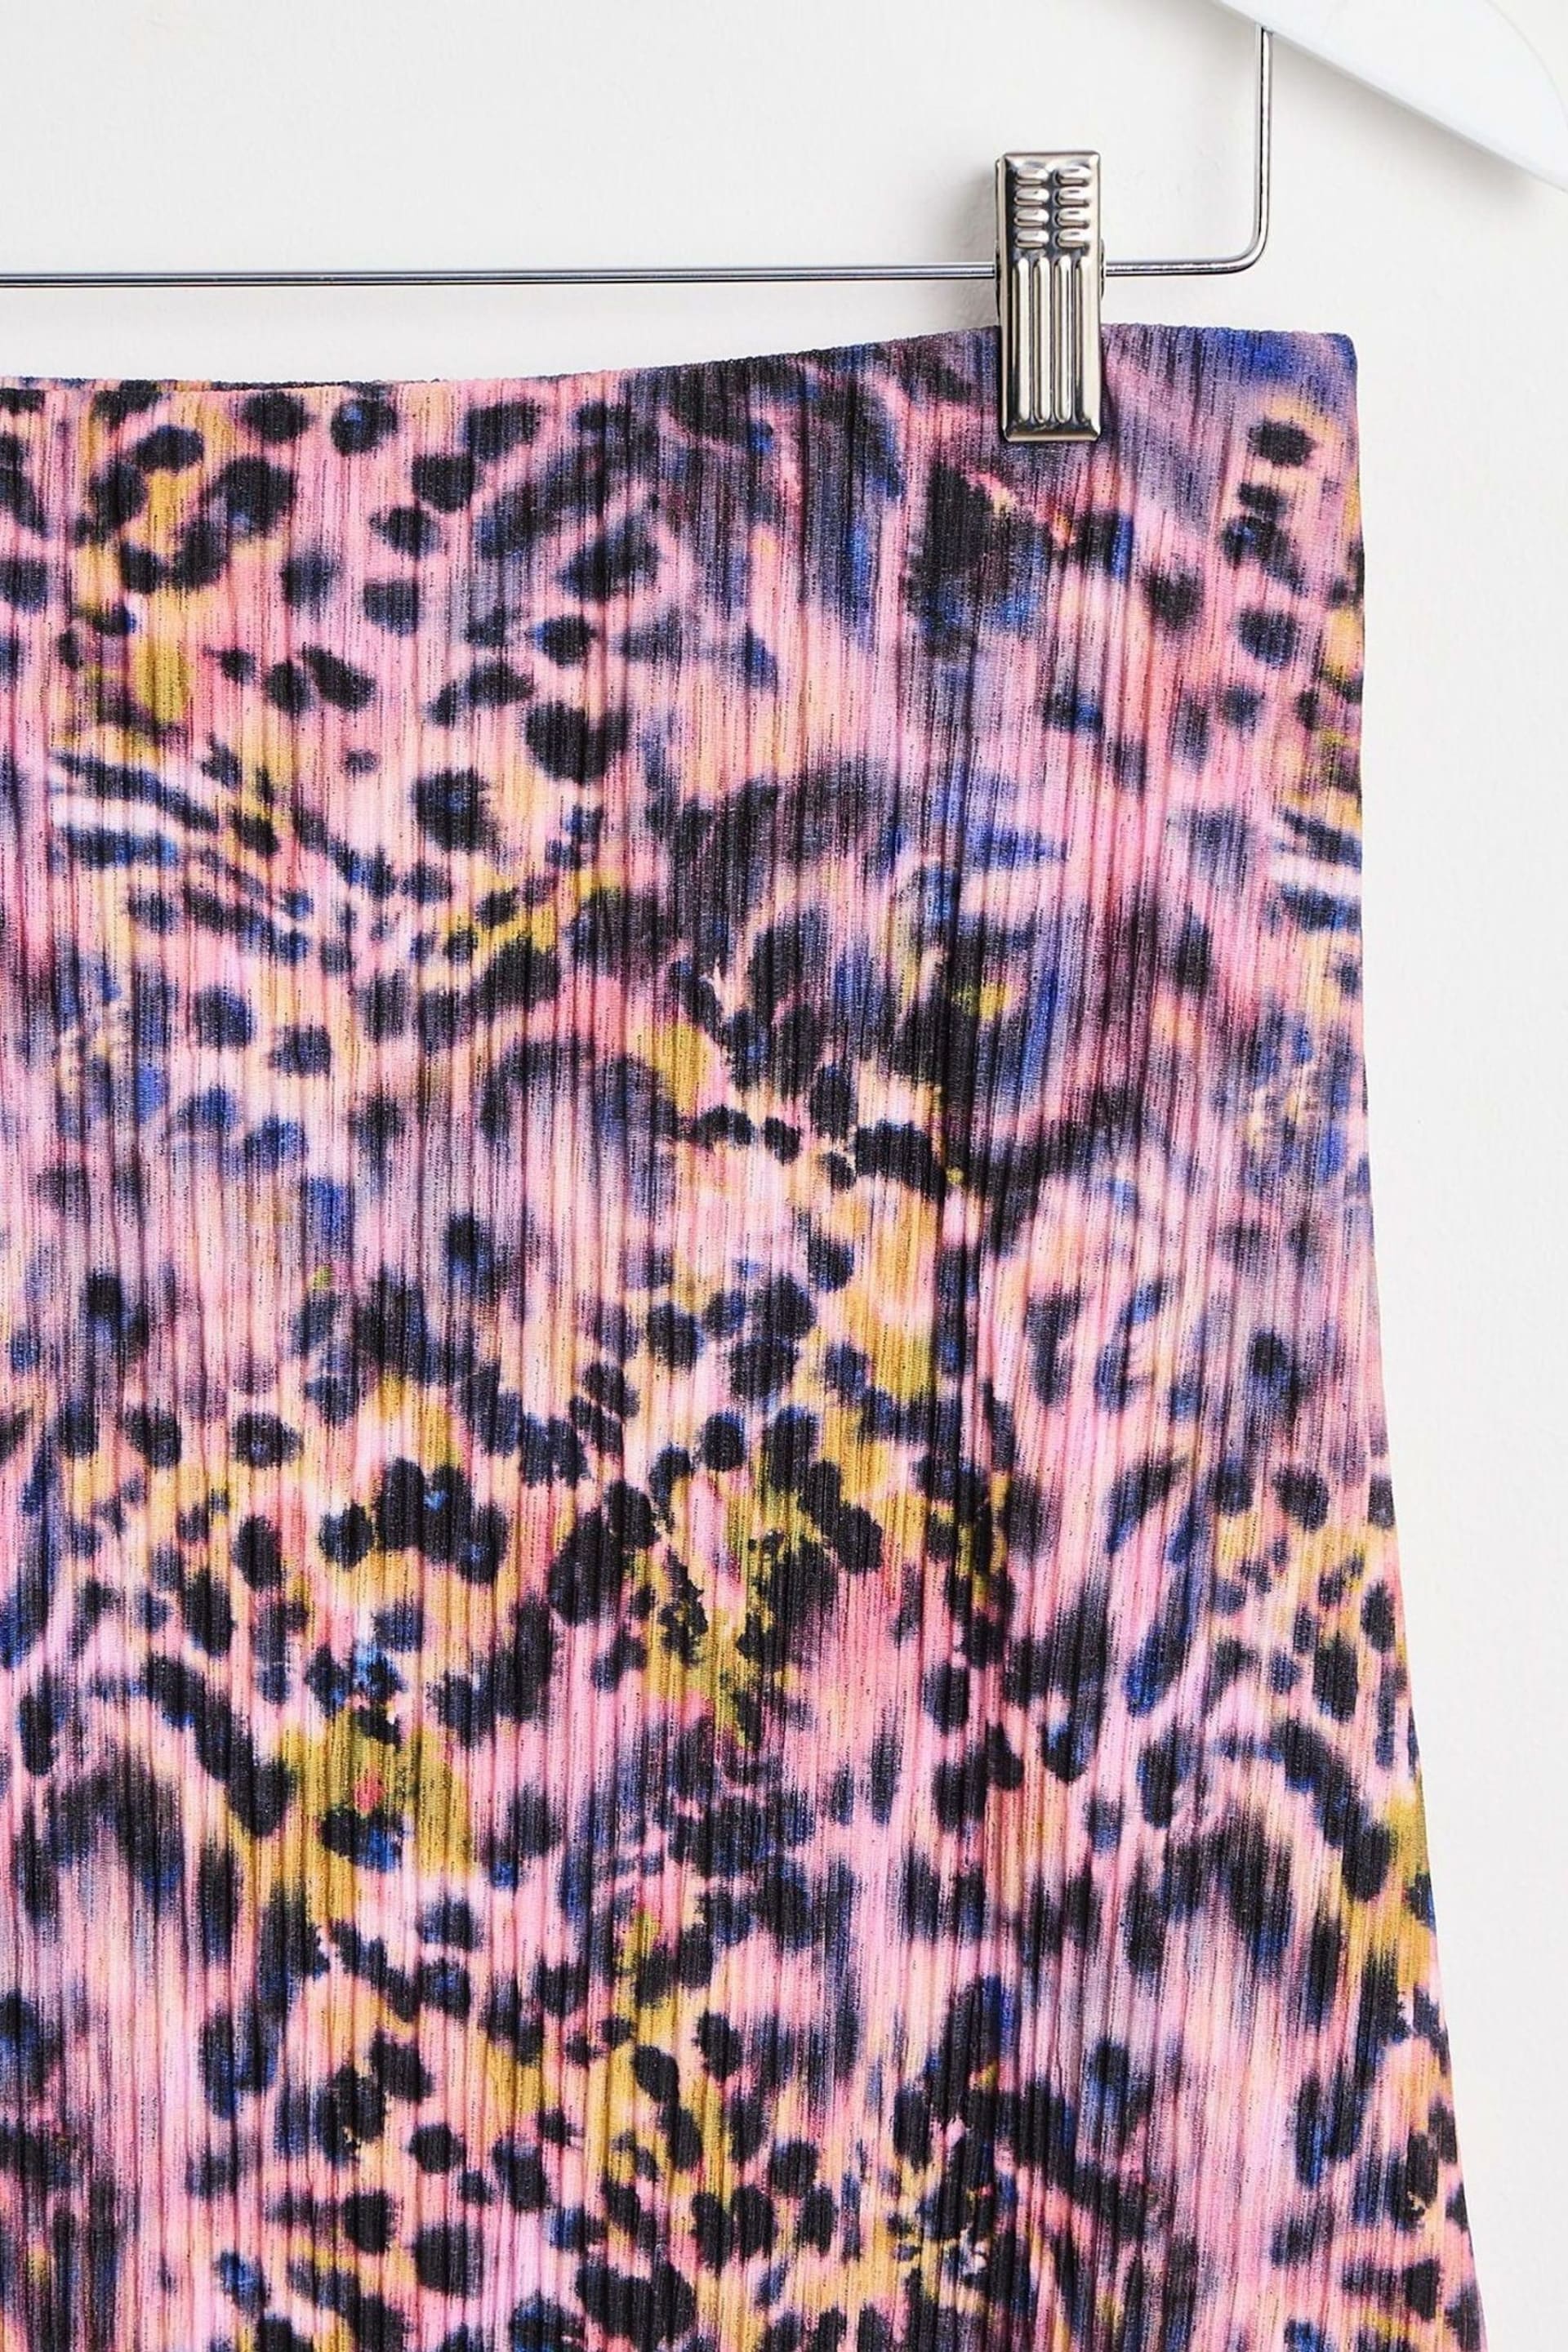 Oliver Bonas Pink Blurred Animal Print Plissé Midi Skirt - Image 7 of 8